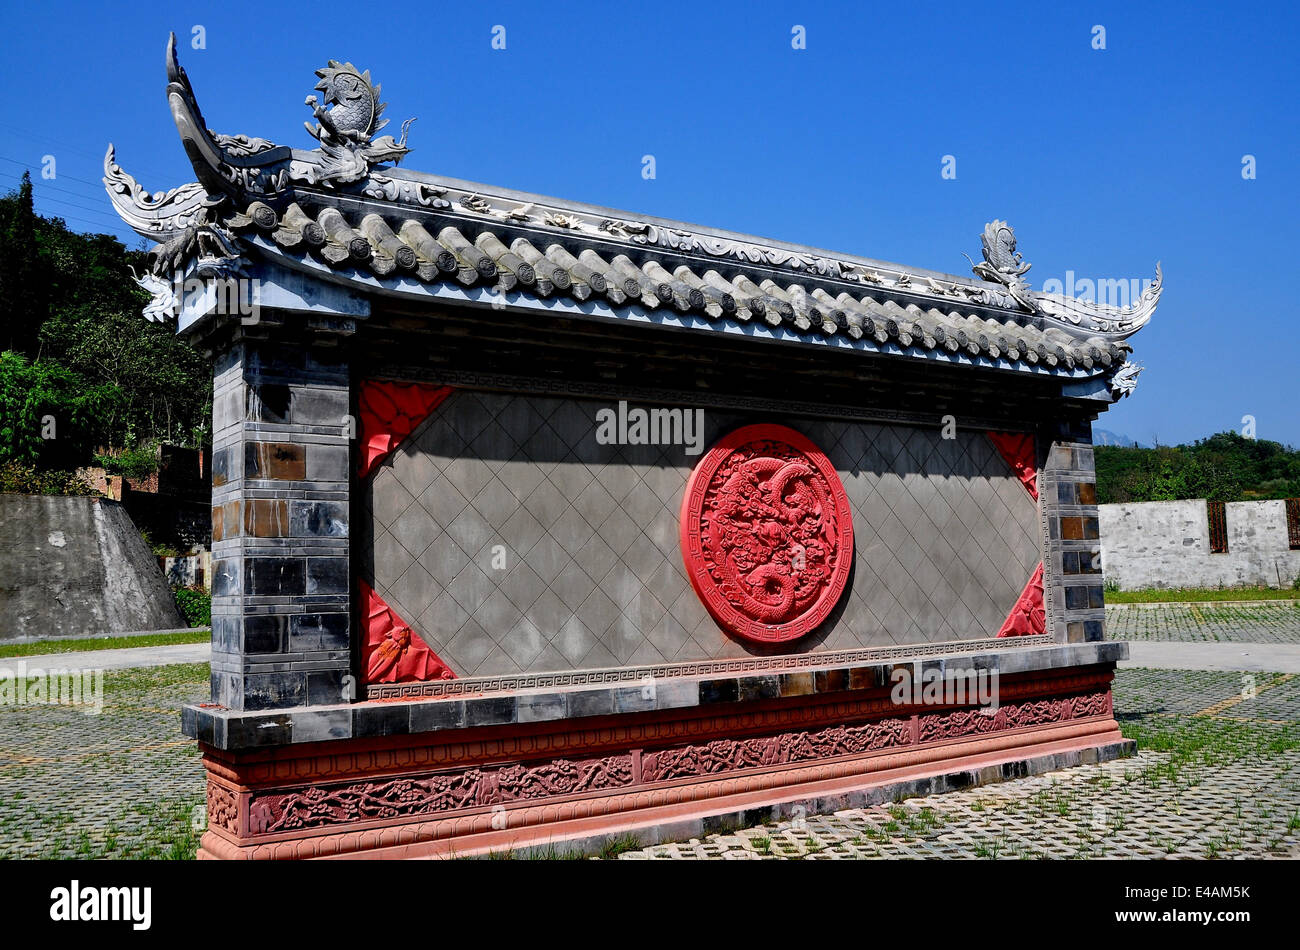 XING XING VILLE, Chine : un mur de cérémonie avec disque dragon dragon et chiffres de toit Banque D'Images